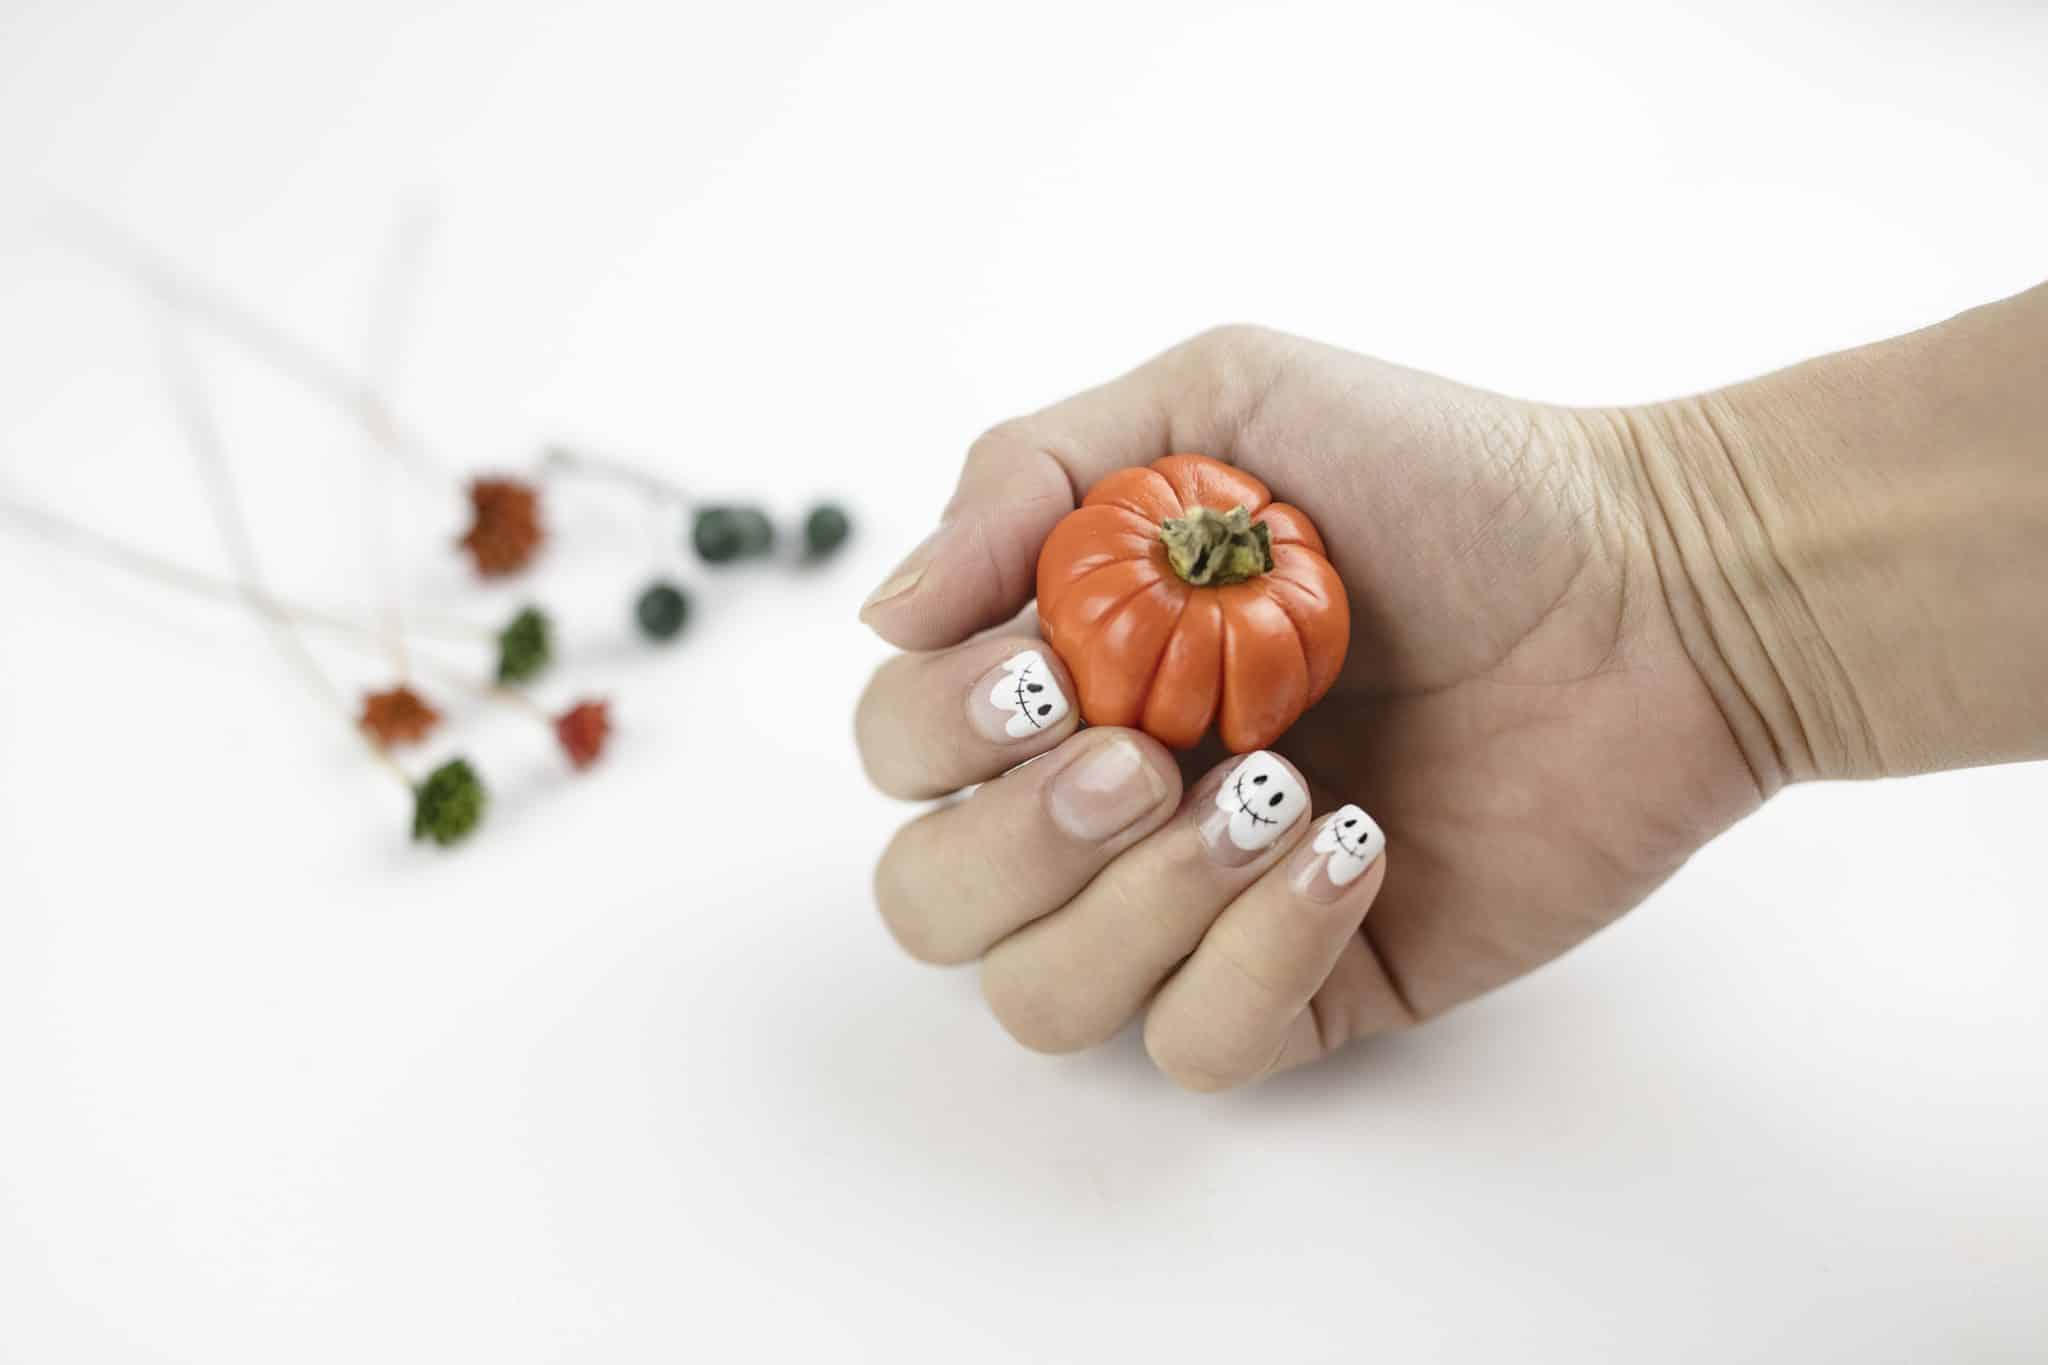 halloween nail art ideas